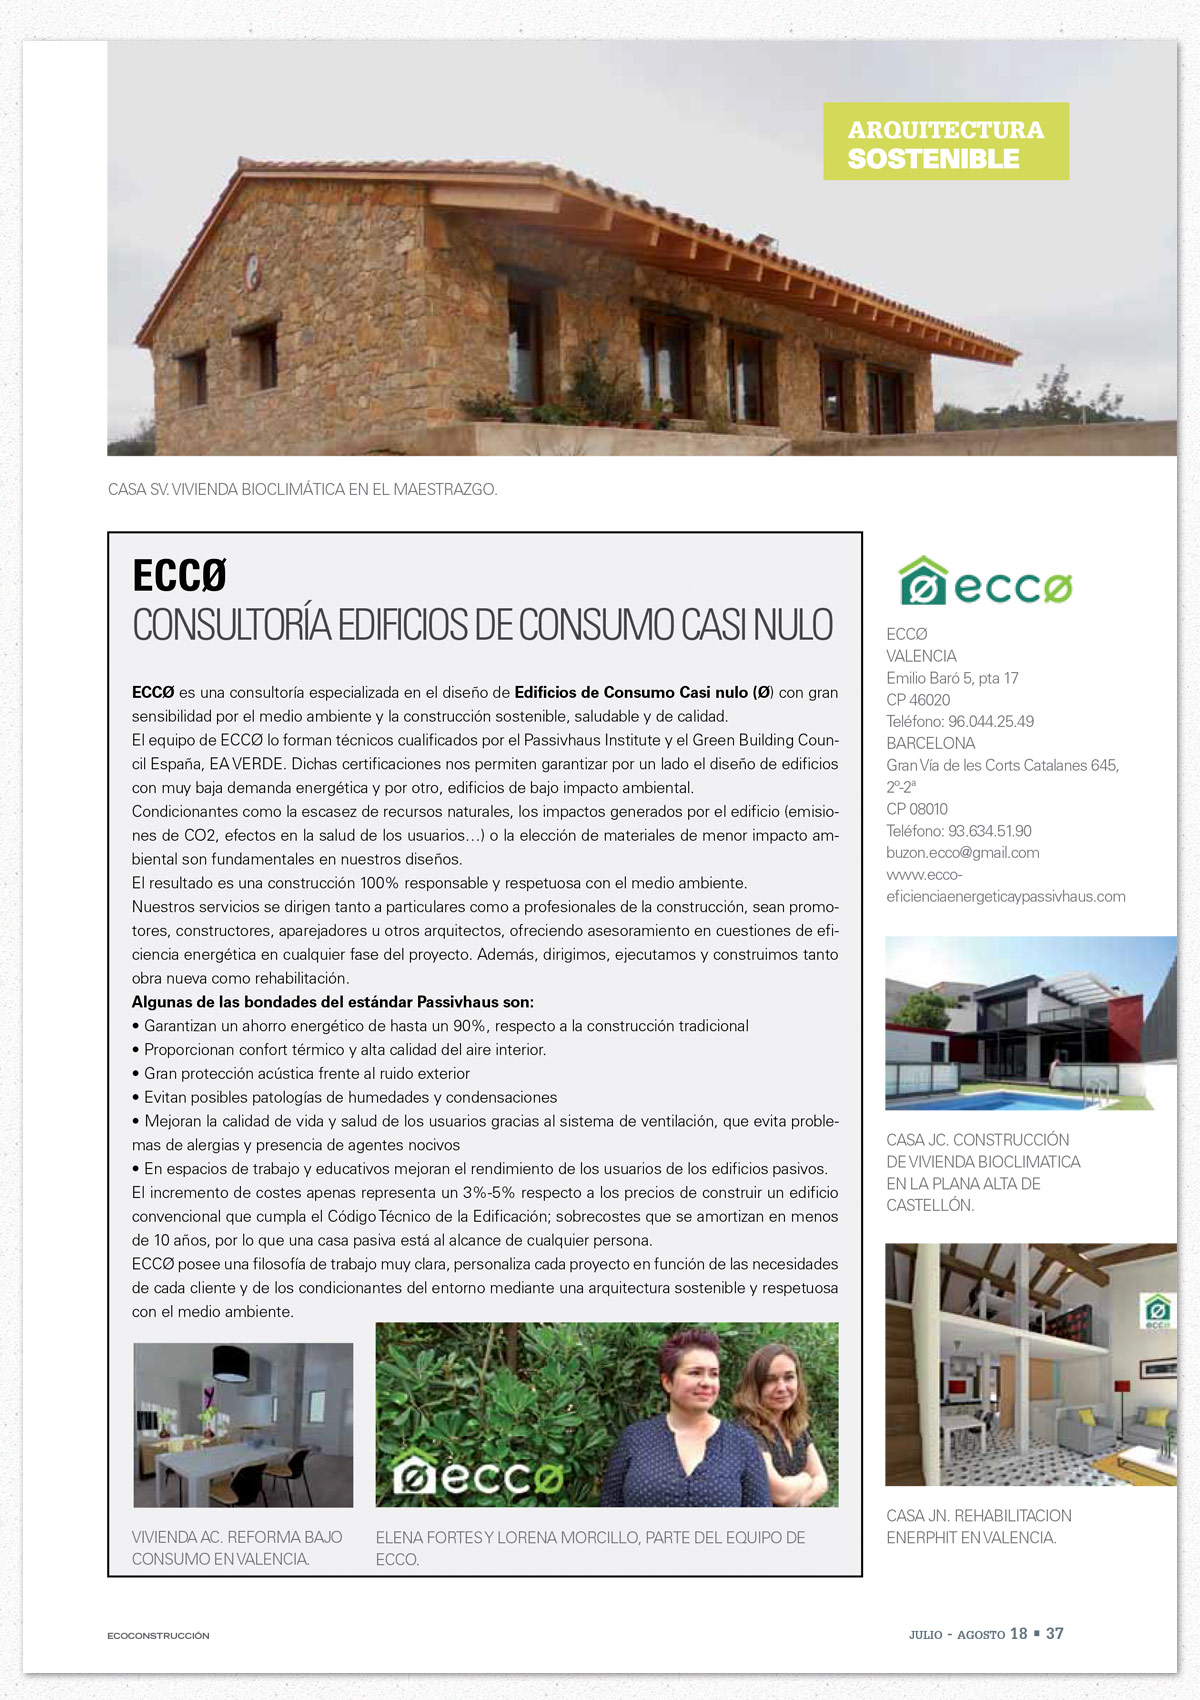 Ecoconstrucción: ECCØ en Anuari 2018